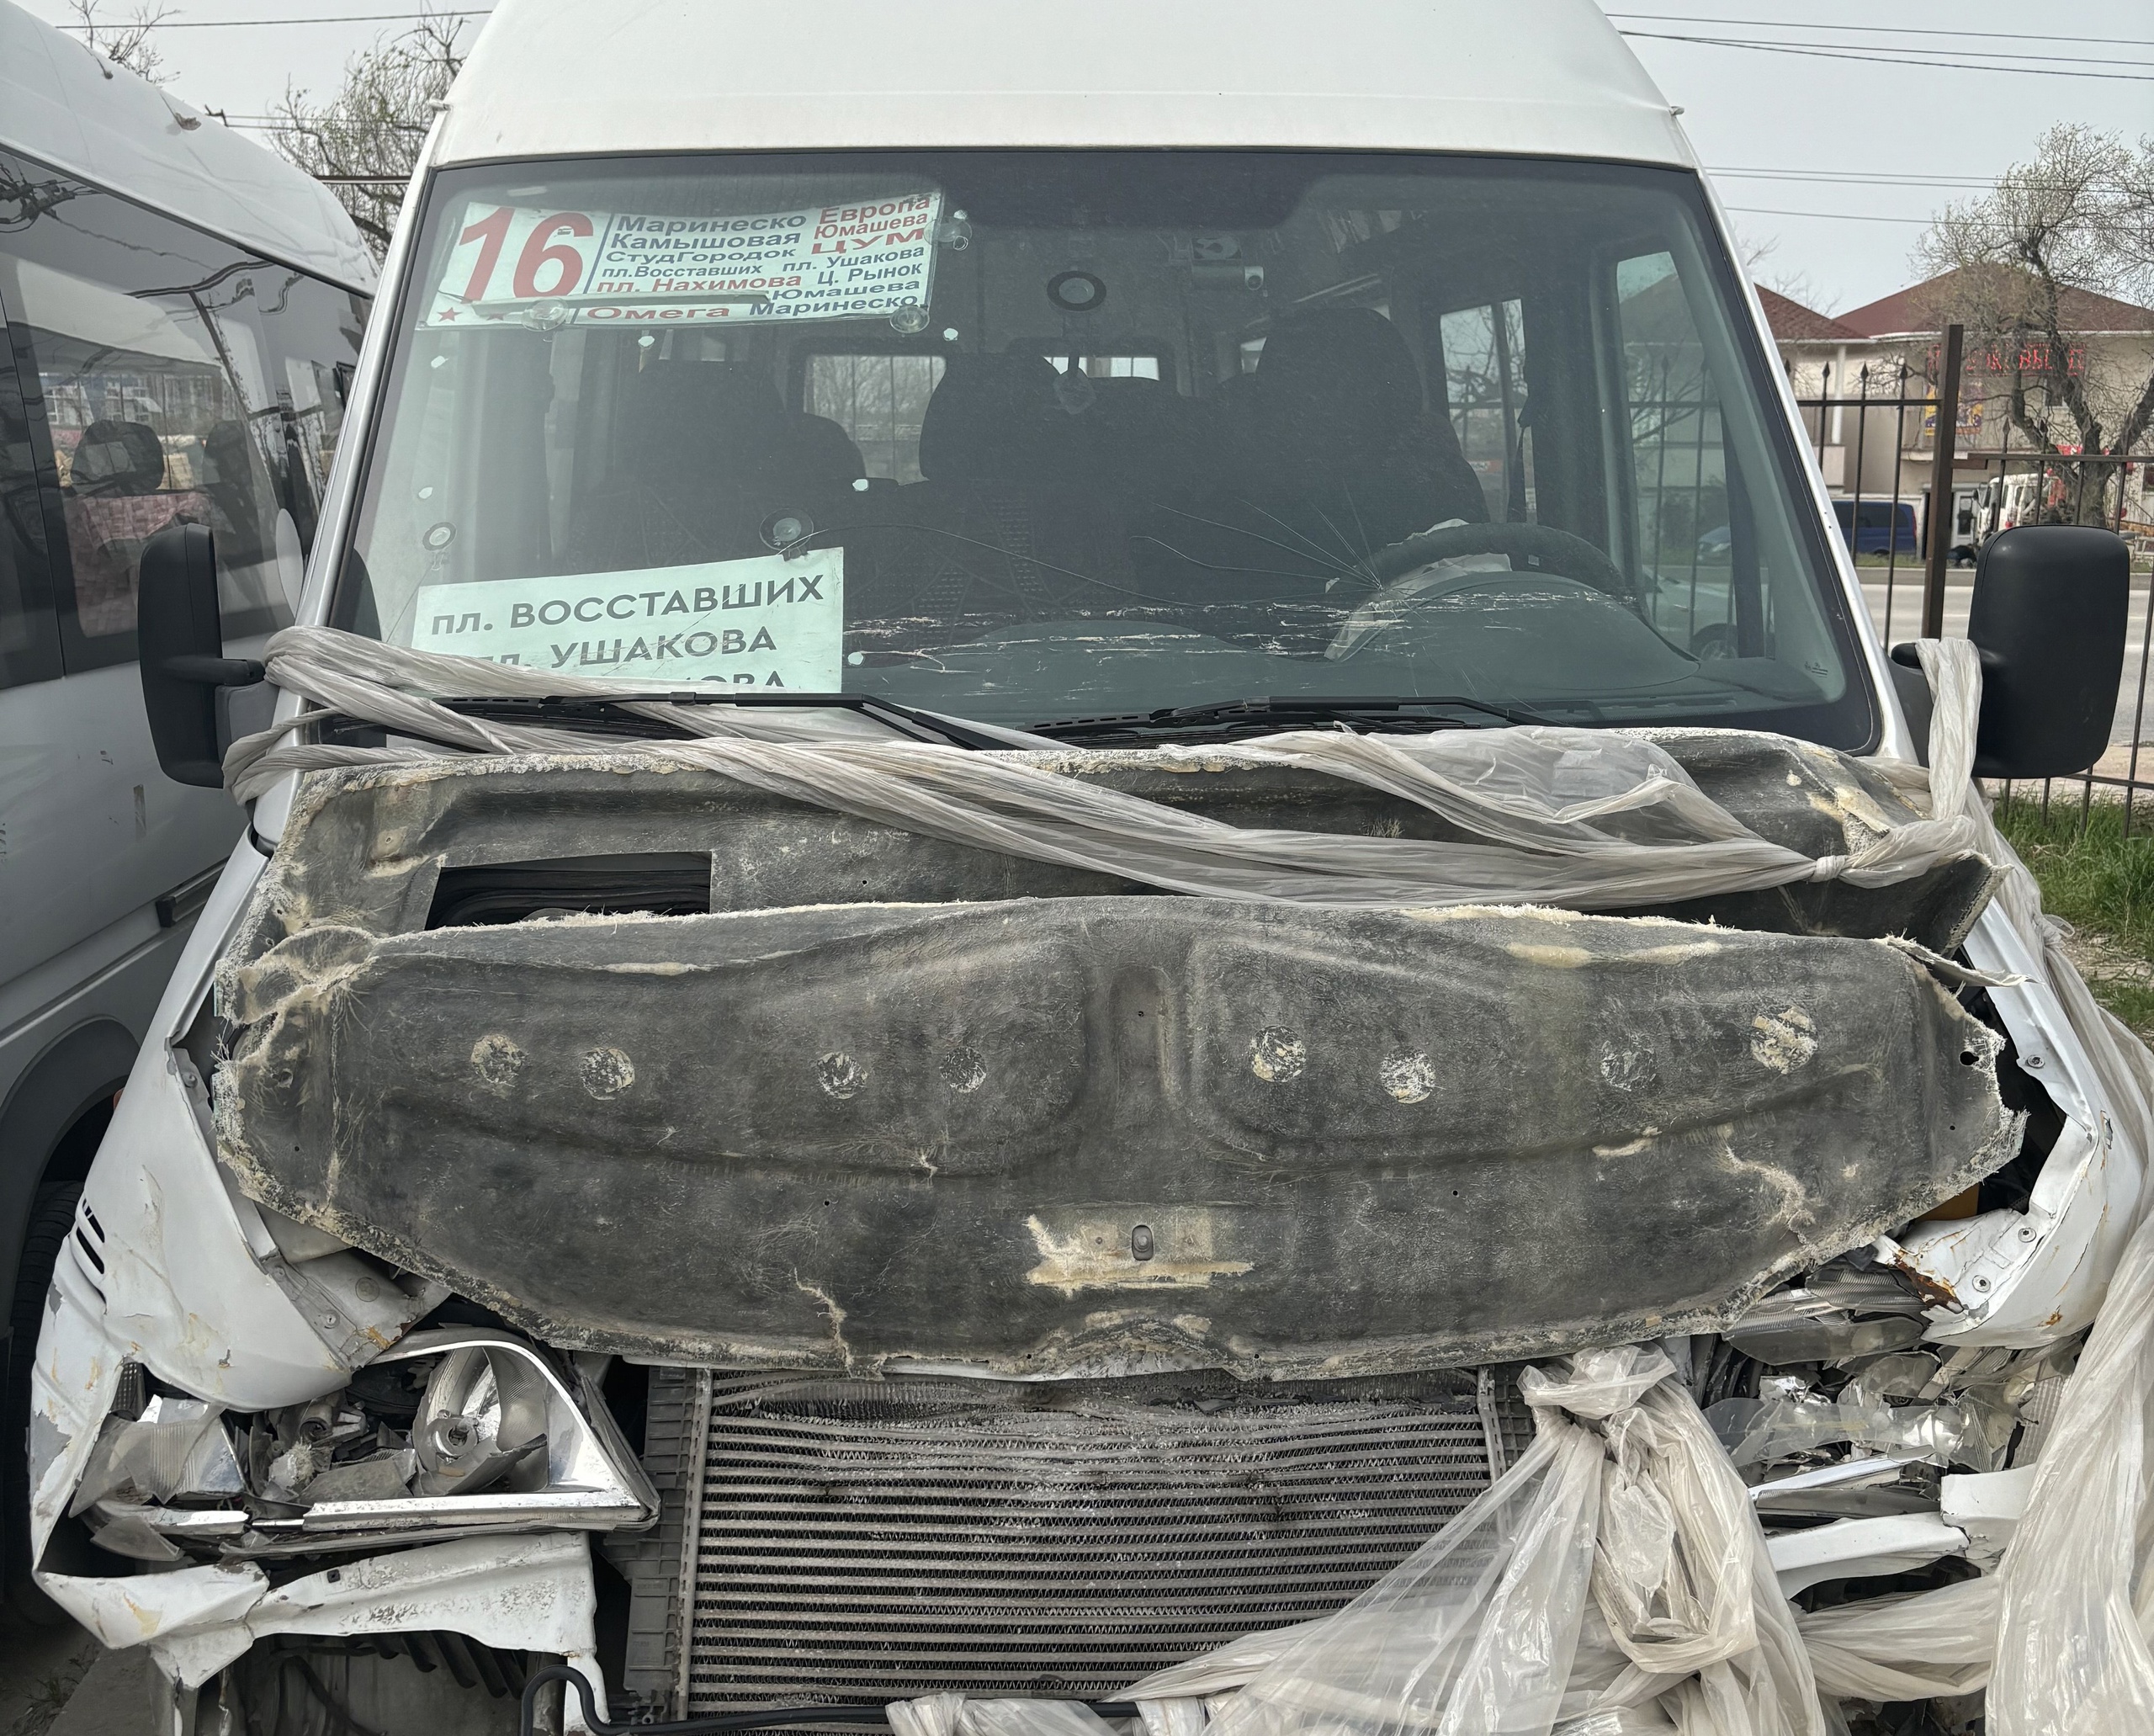 В Севастополе водитель маршрутки ответит за ДТП в наркотическом опьянении при перевозке пассажиров